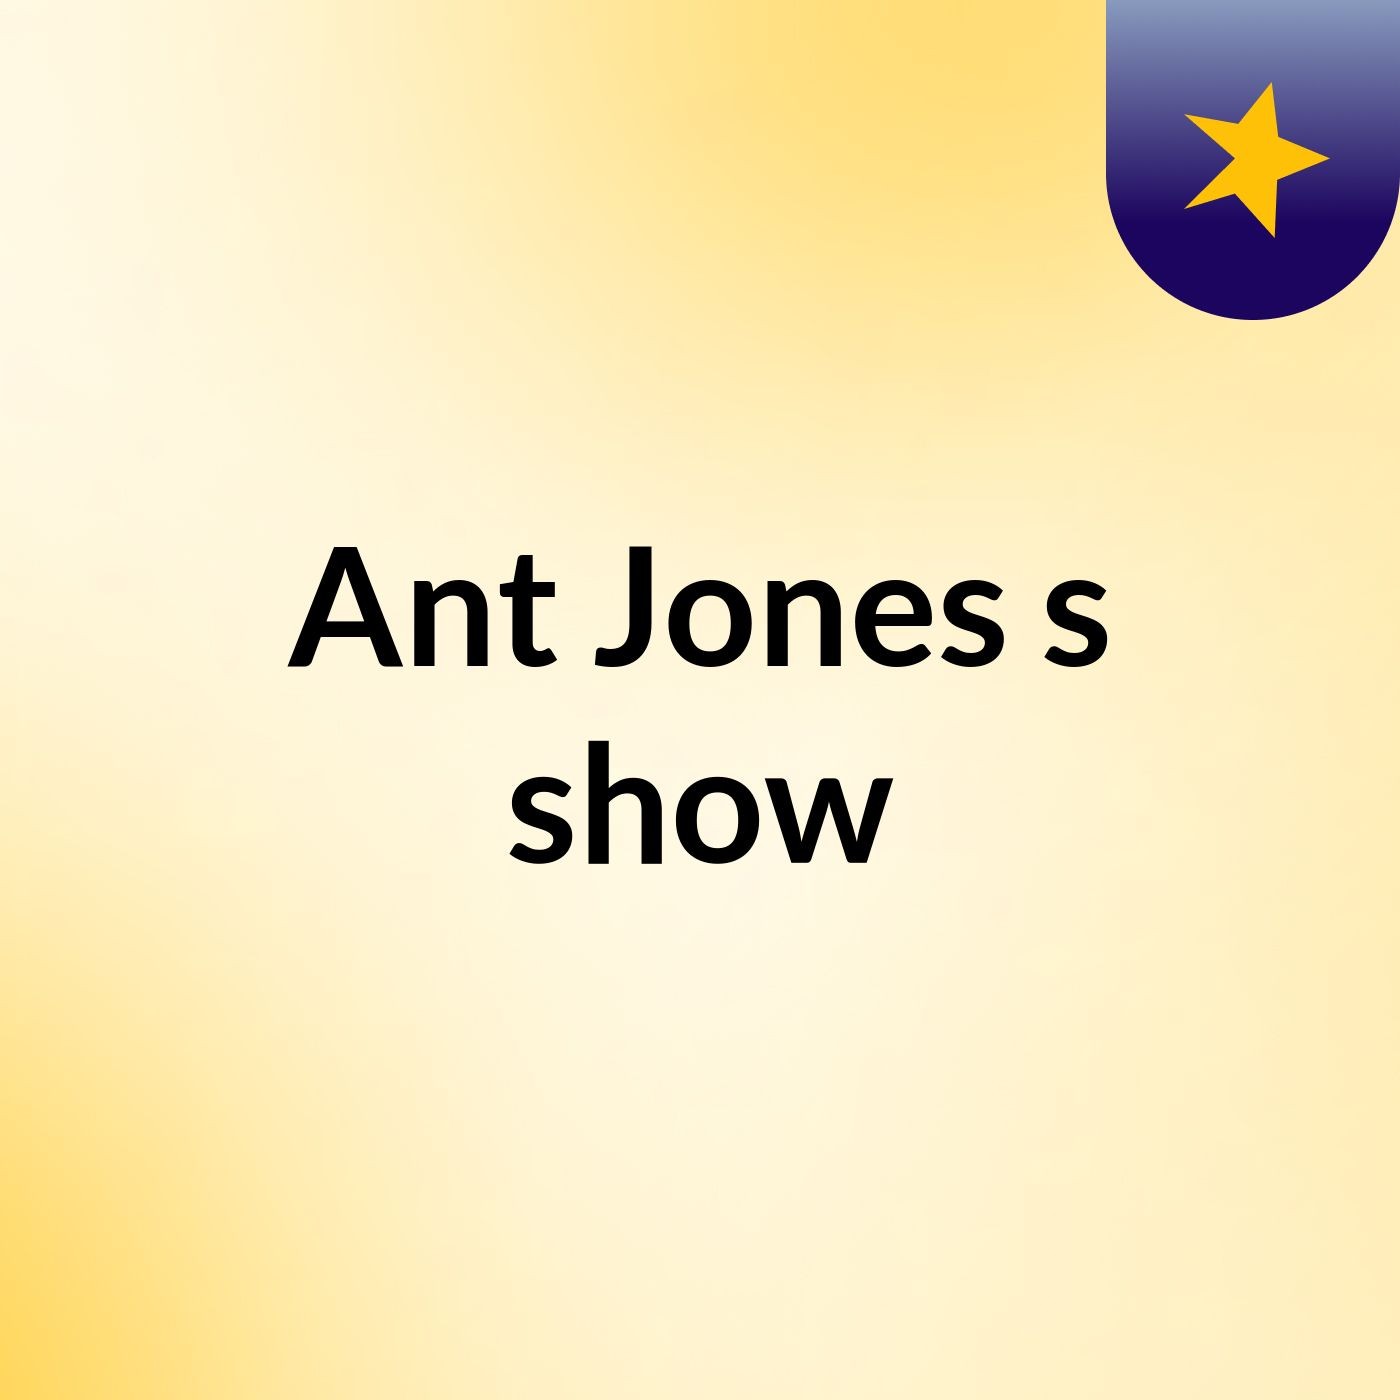 Ant Jones's show